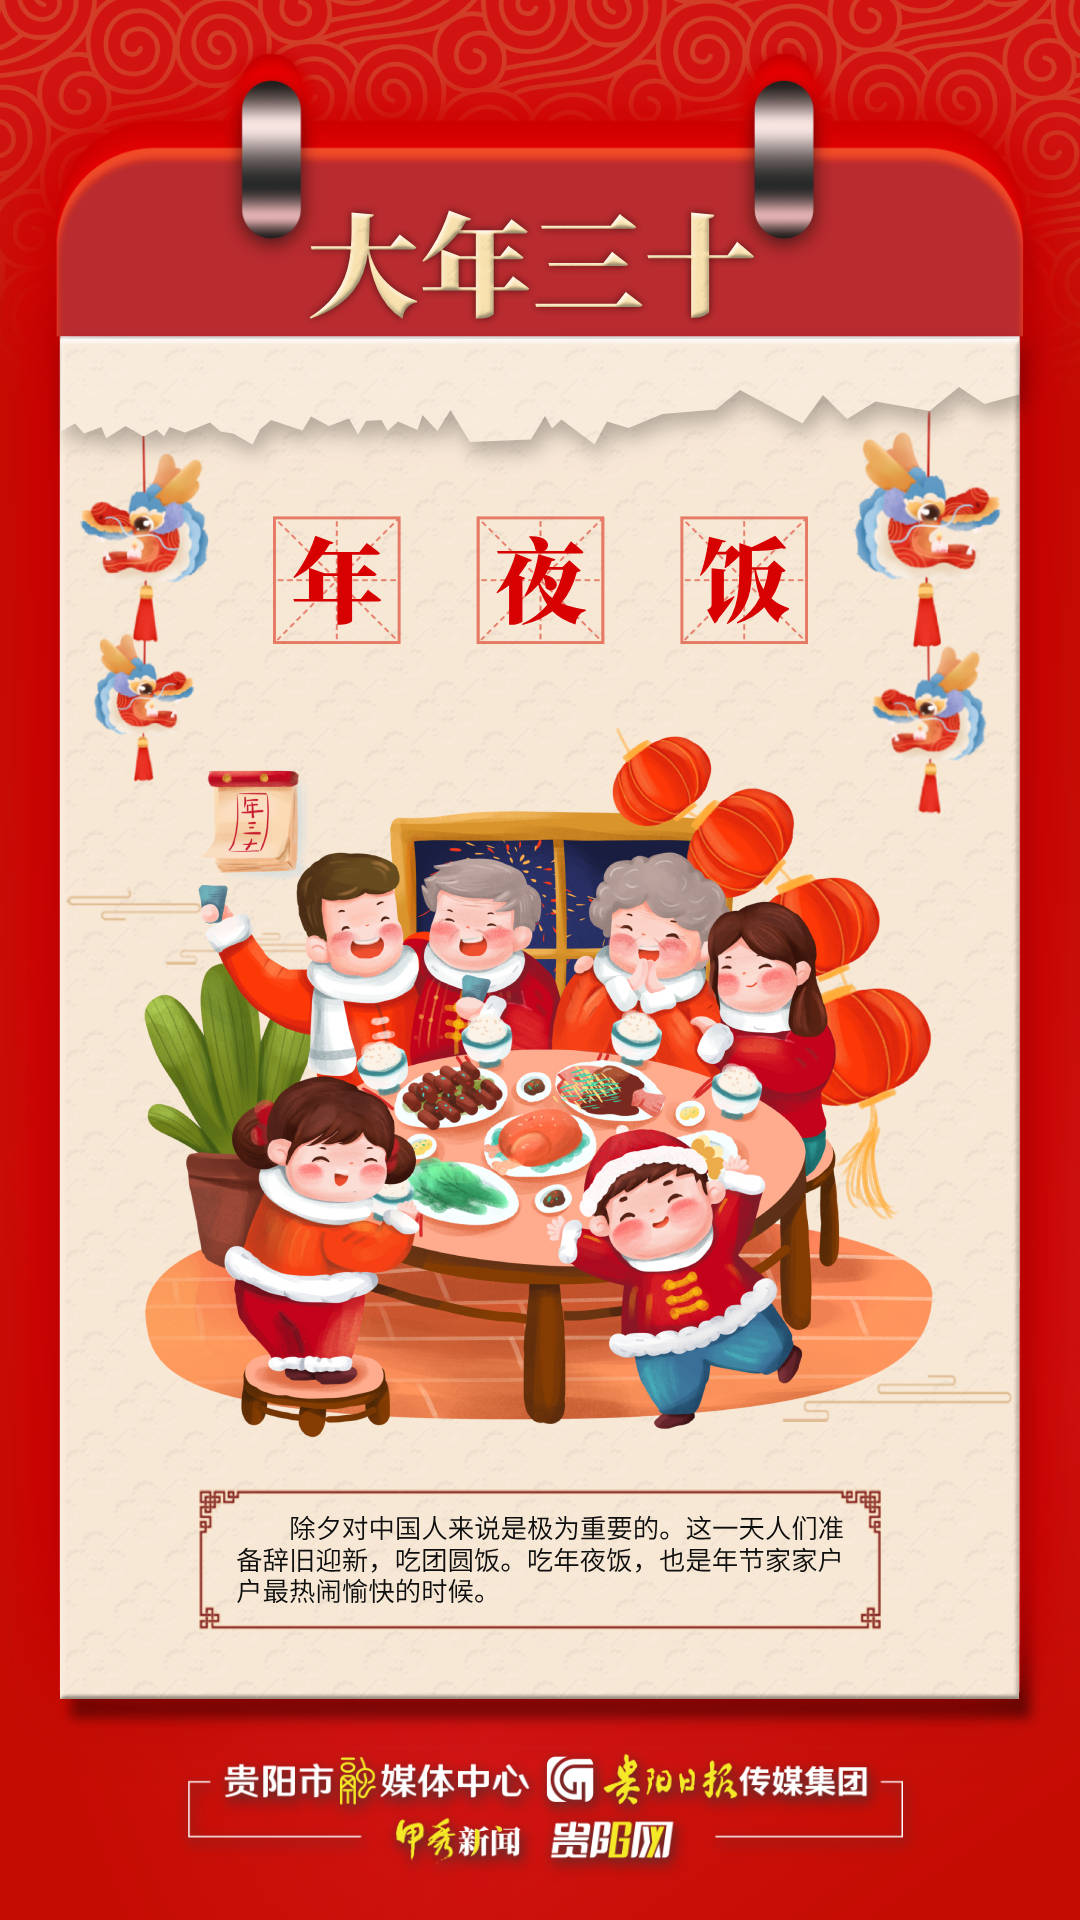 【海报】中国春节传统习俗之大年三十:年夜饭